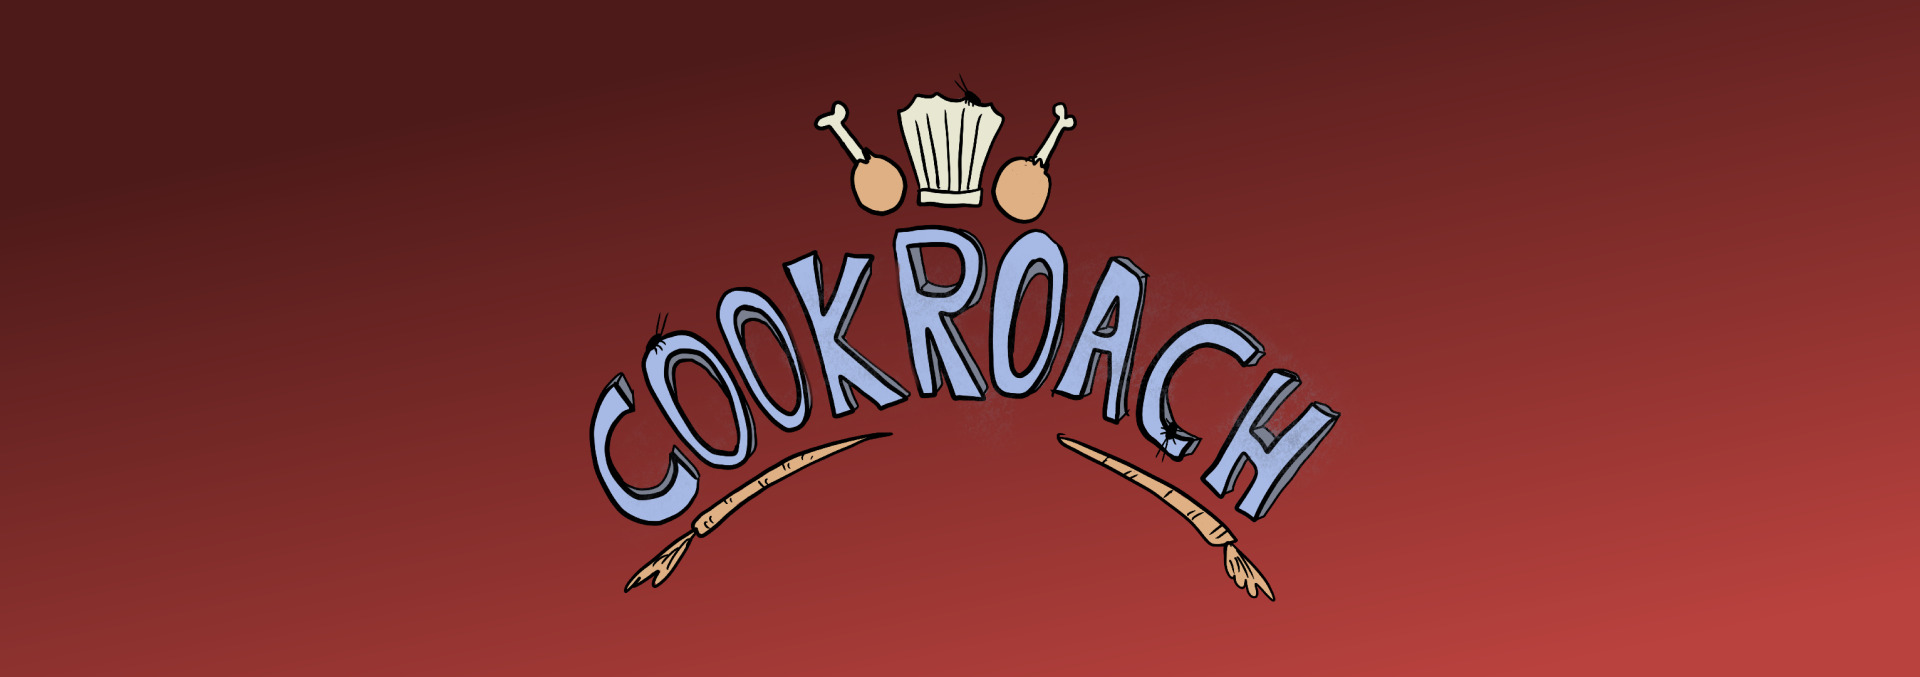 Cookroach